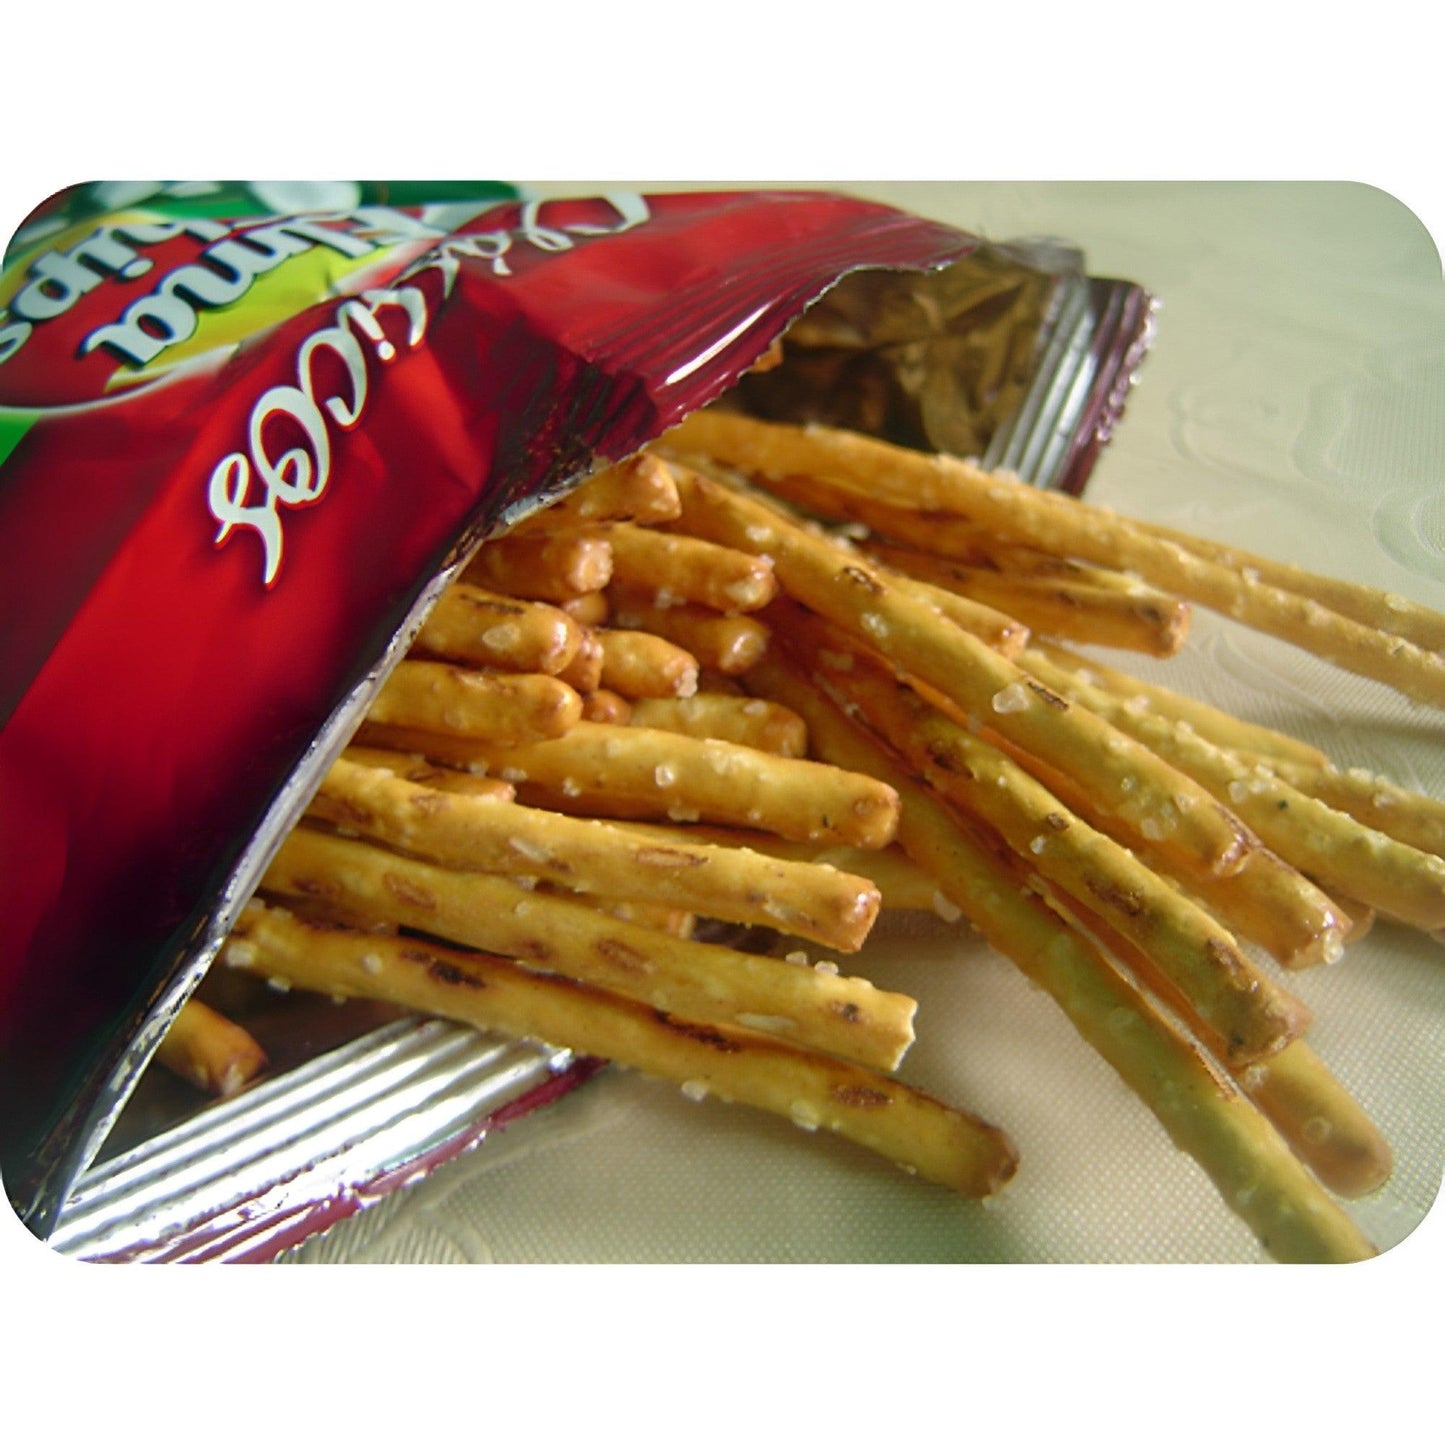 Elma Chips Stiksy Salty Snack 4.23 oz. (Pack of 5) - Brazilian Shop